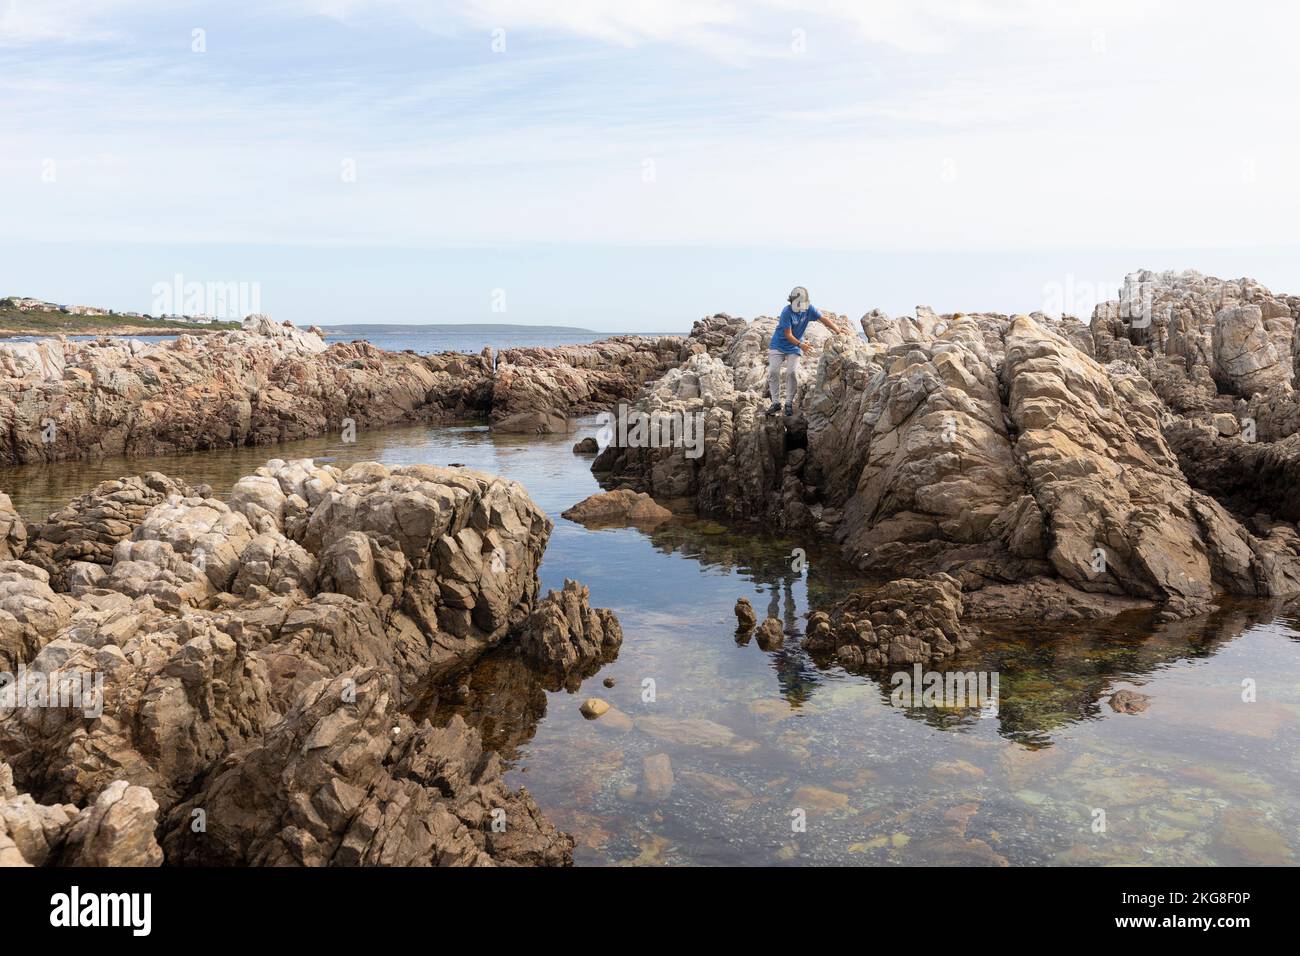 Afrique du Sud, Gansbaai, Boy (8-9) escalade sur des rochers sur la côte maritime Banque D'Images